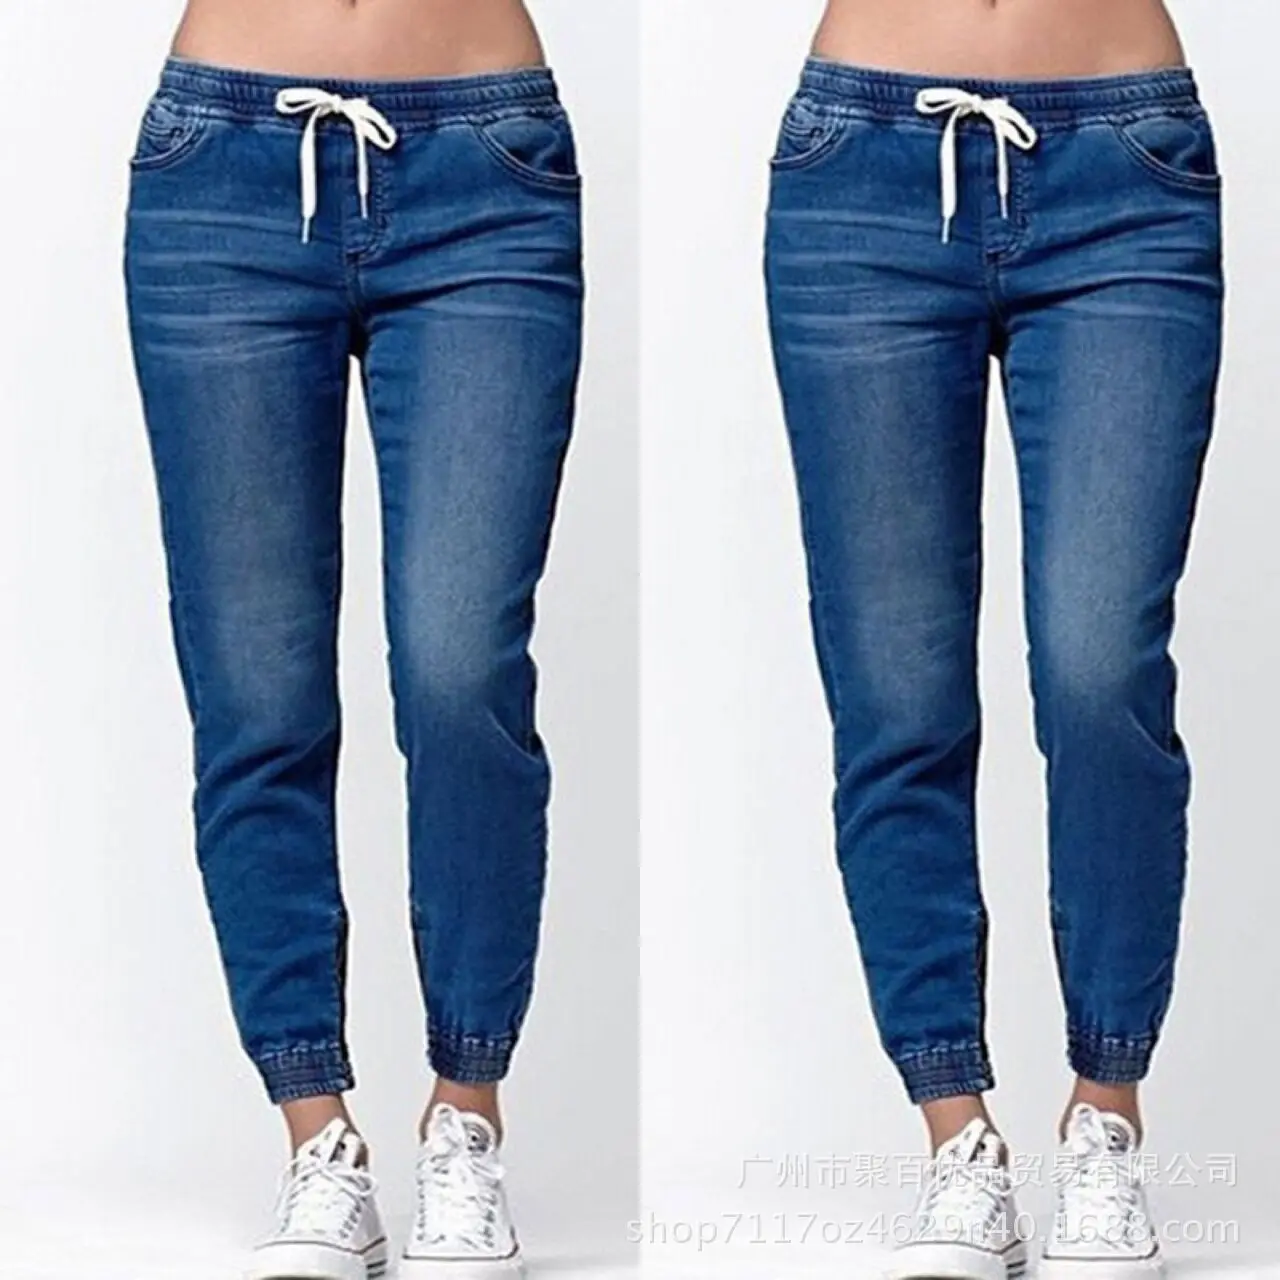 Европейский и американский женский стиль,, эластичная резинка на талии, эластичная резинка на талии, обтягивающие джинсы